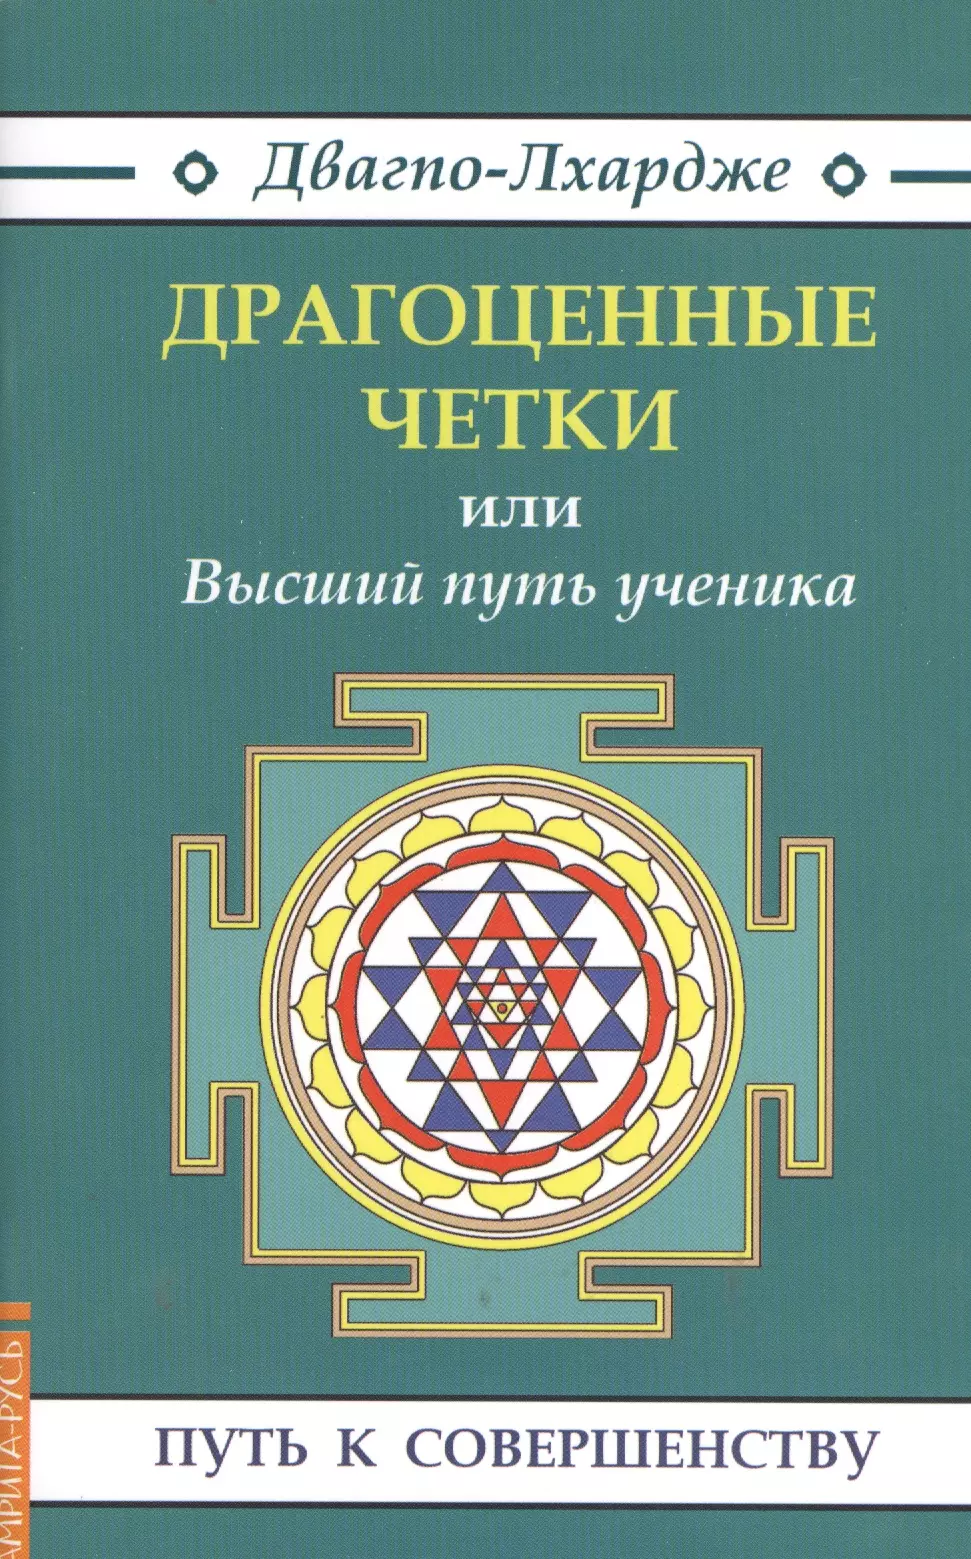 Двагпо-Лхардже Драгоценные четки (3-е изд.) или Высший путь ученика